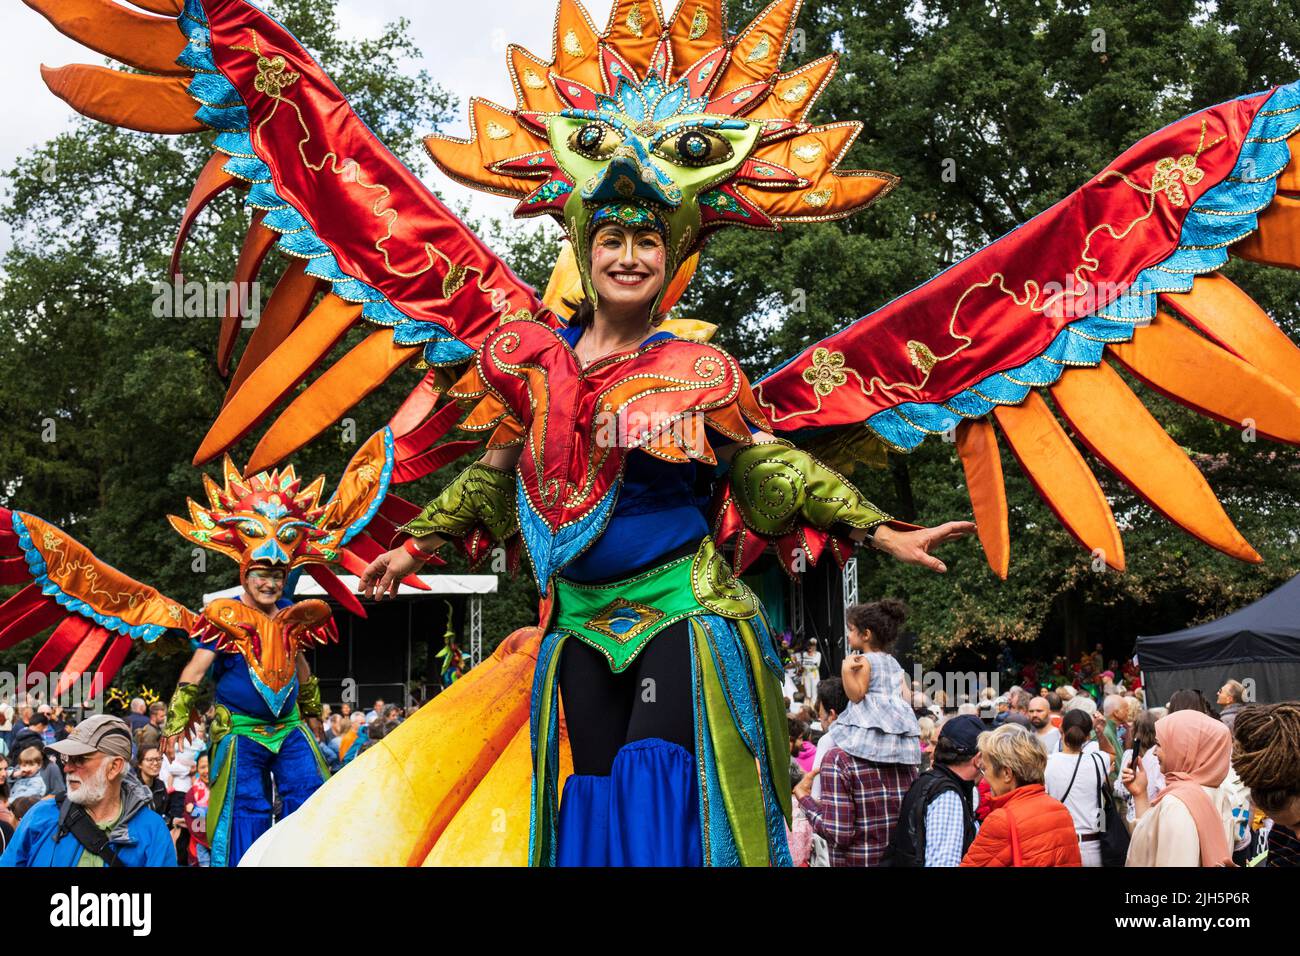 Carnevale di Brema con costumi colorati, maschere e ritmi samba, Brema, Germania, Europa Foto Stock